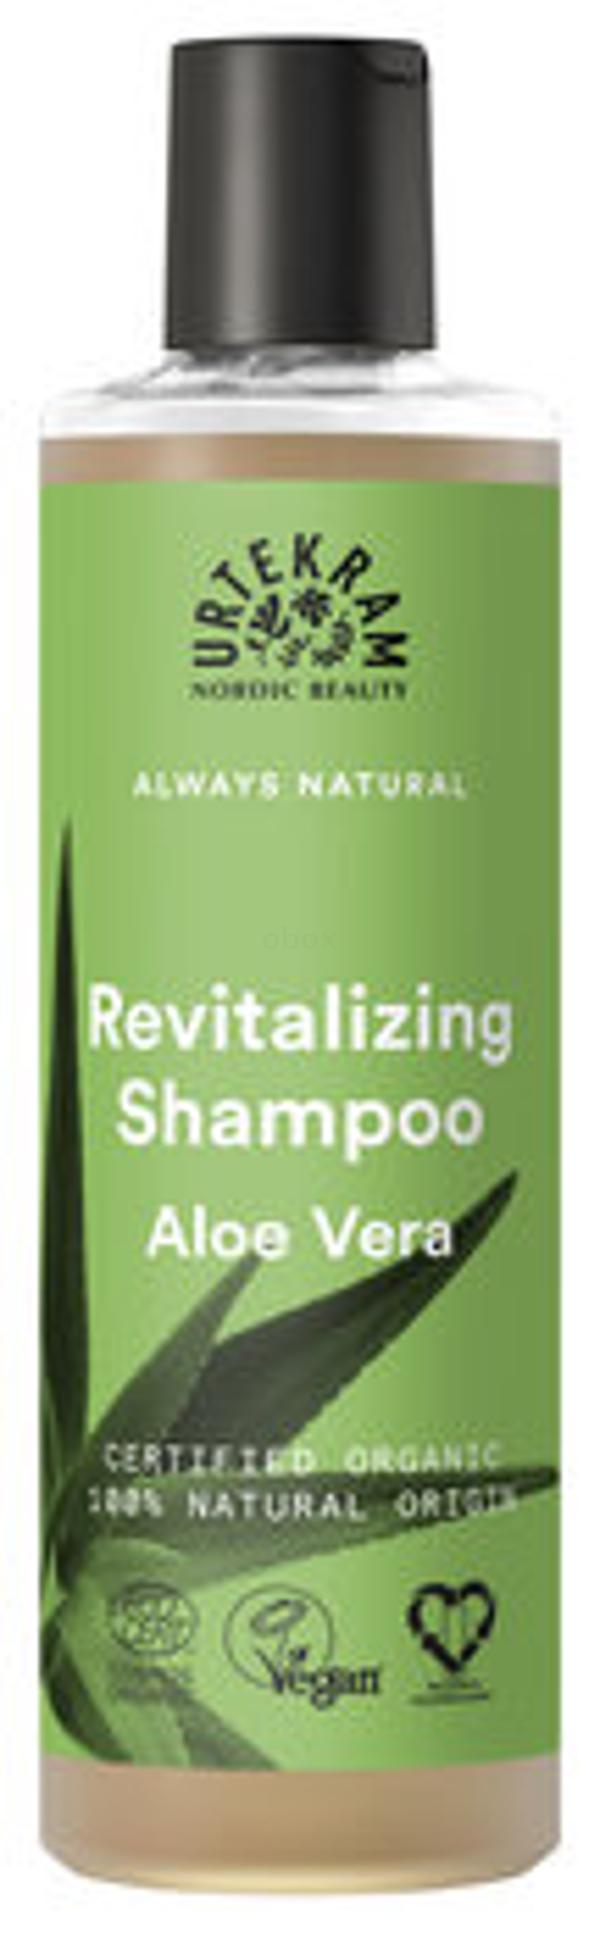 Produktfoto zu Aloe Vera Shampoo für normales Haar 250ml